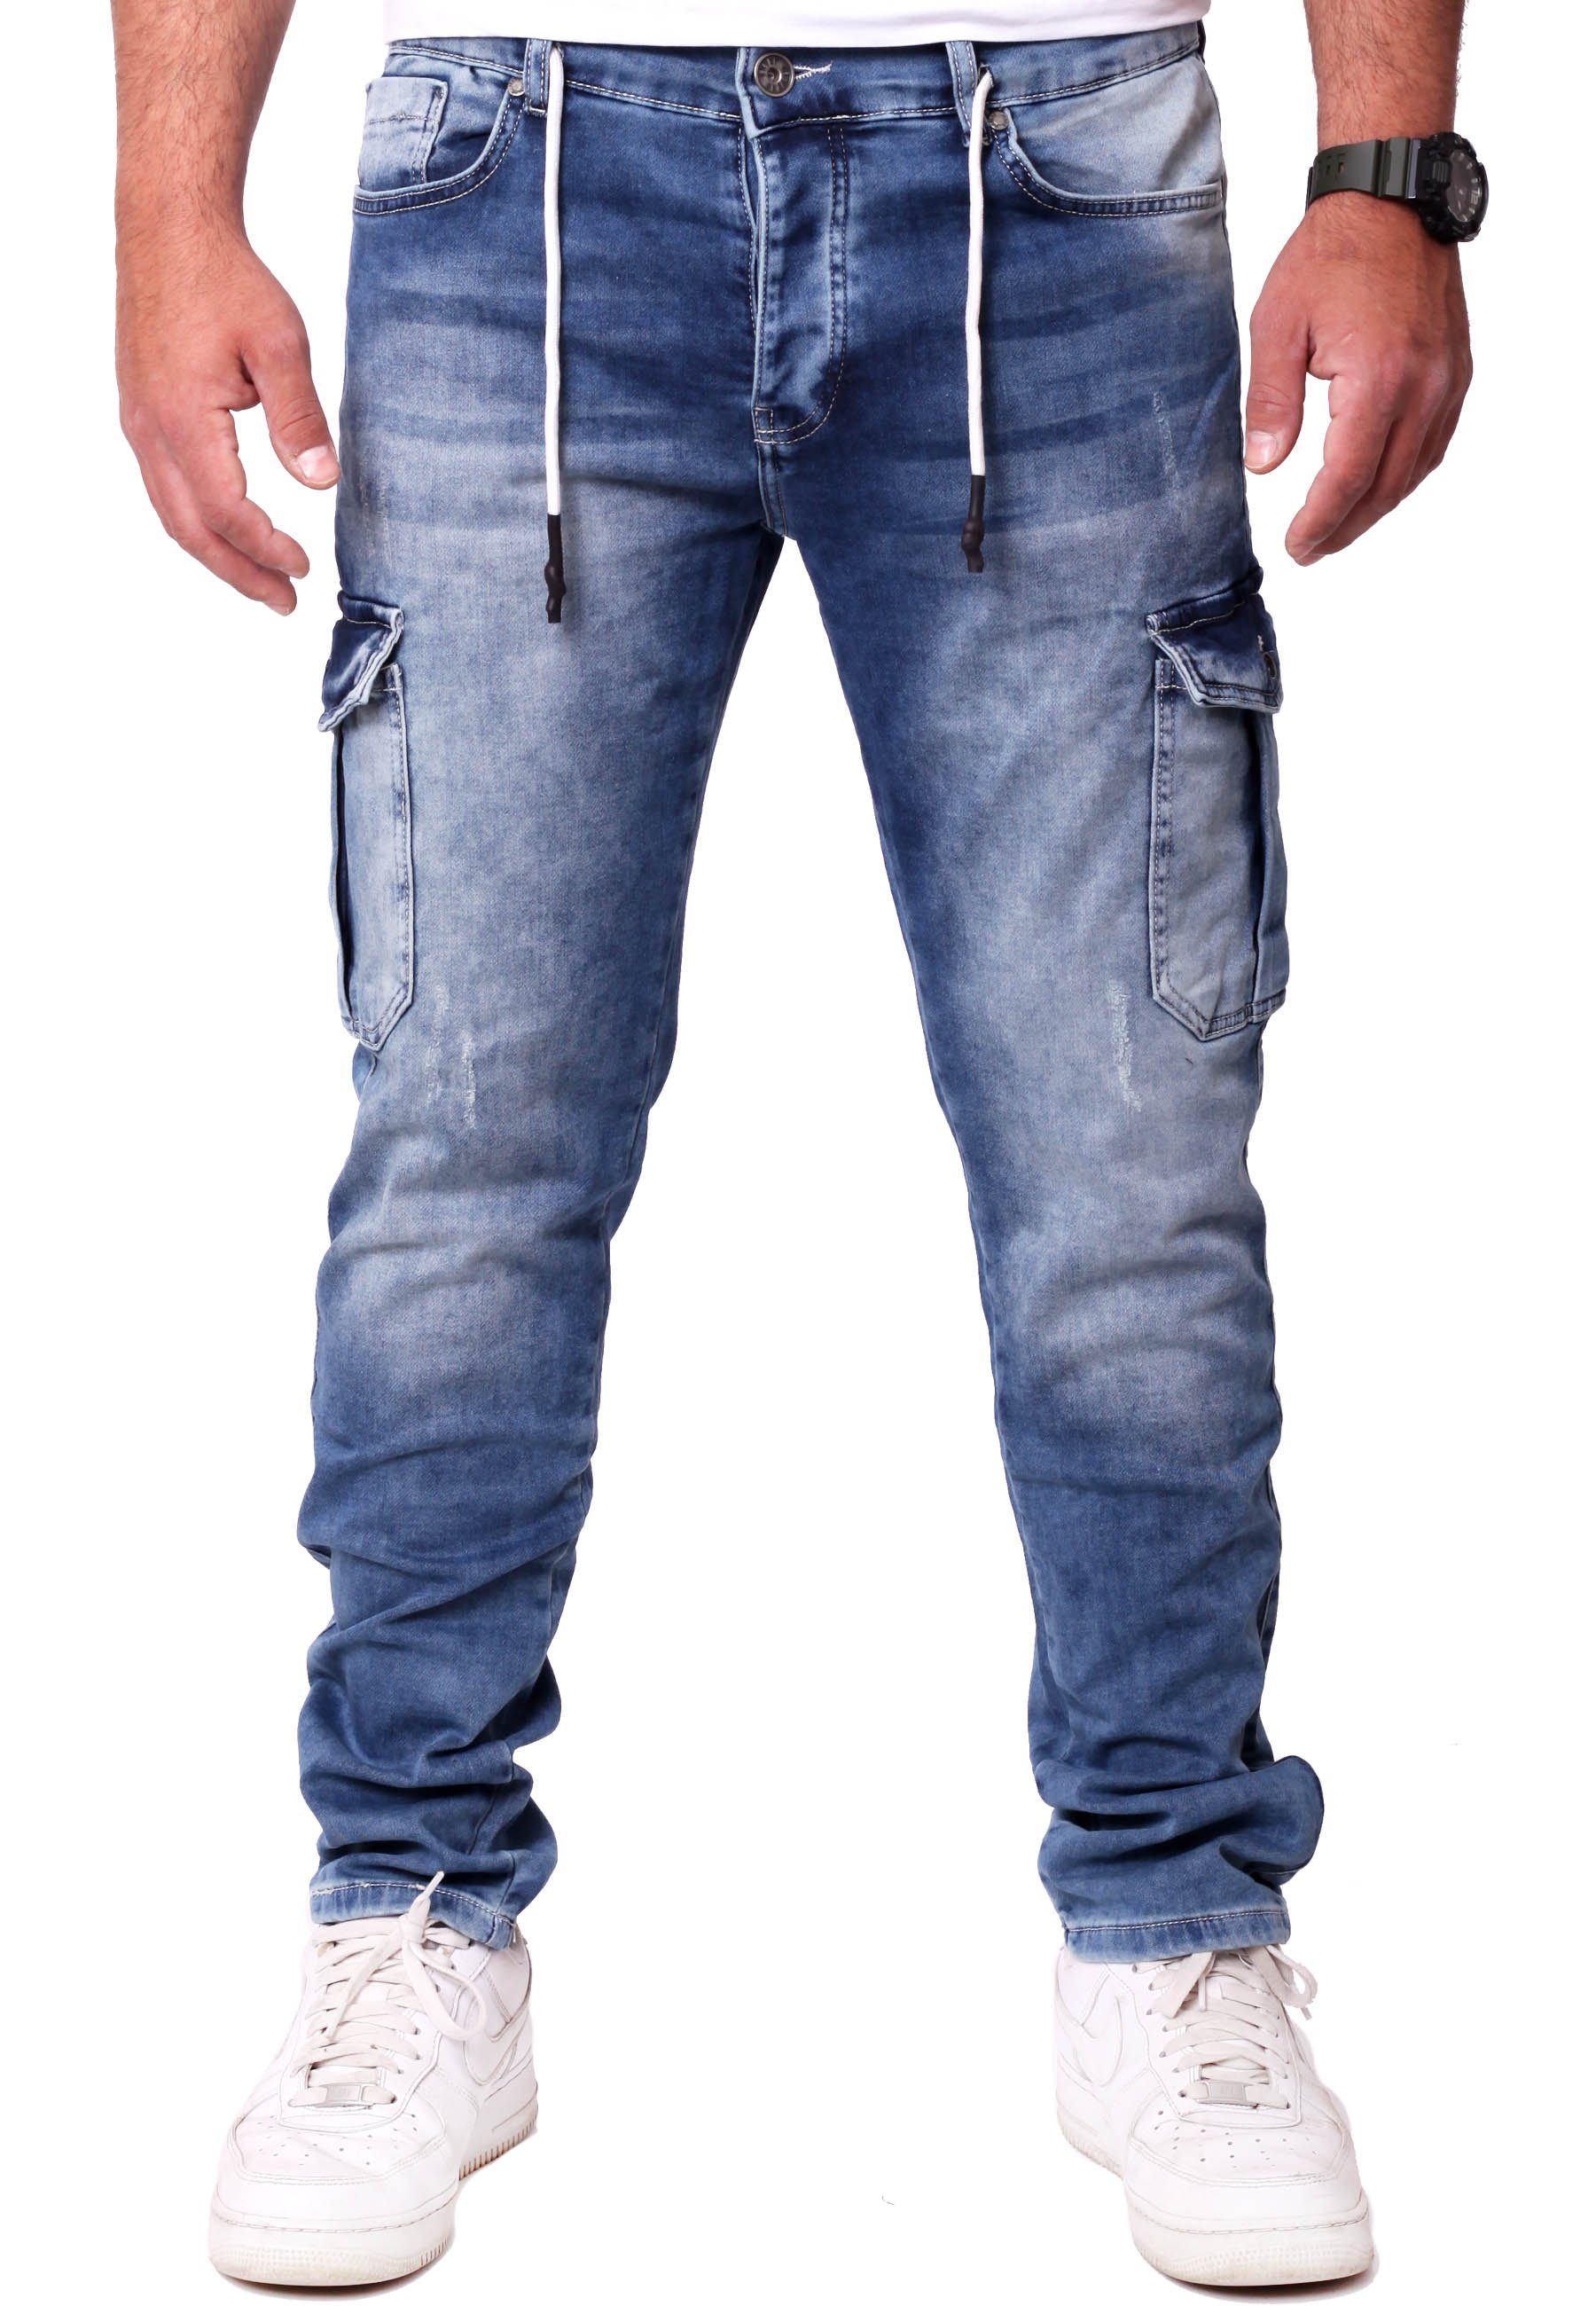 Reslad Hose Cargo Cargohose Slim Herren in Jeans Sweatjeans Sweathose - Stretch-Jeans Fit Jeansoptik Stretch Cargo-Hose Reslad